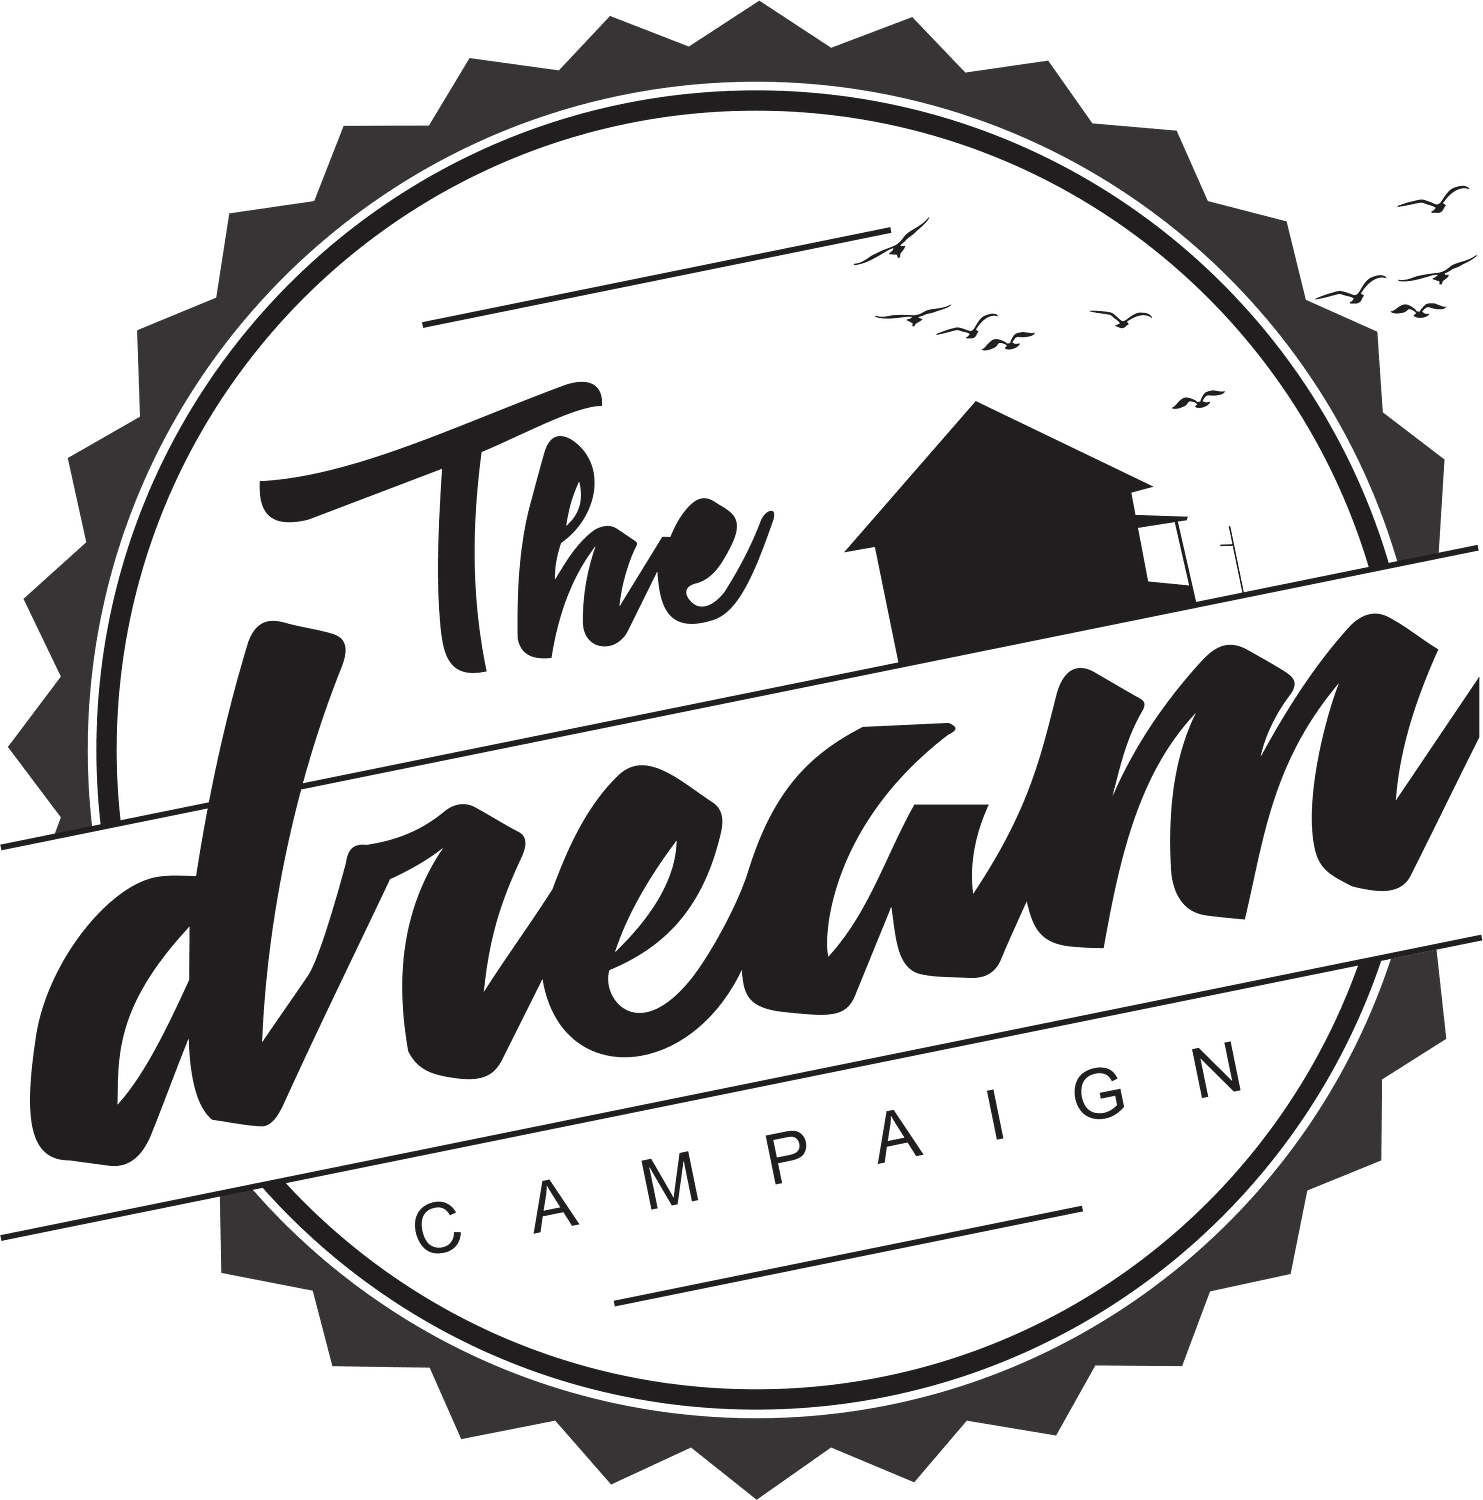 The Dream Campaign Inc